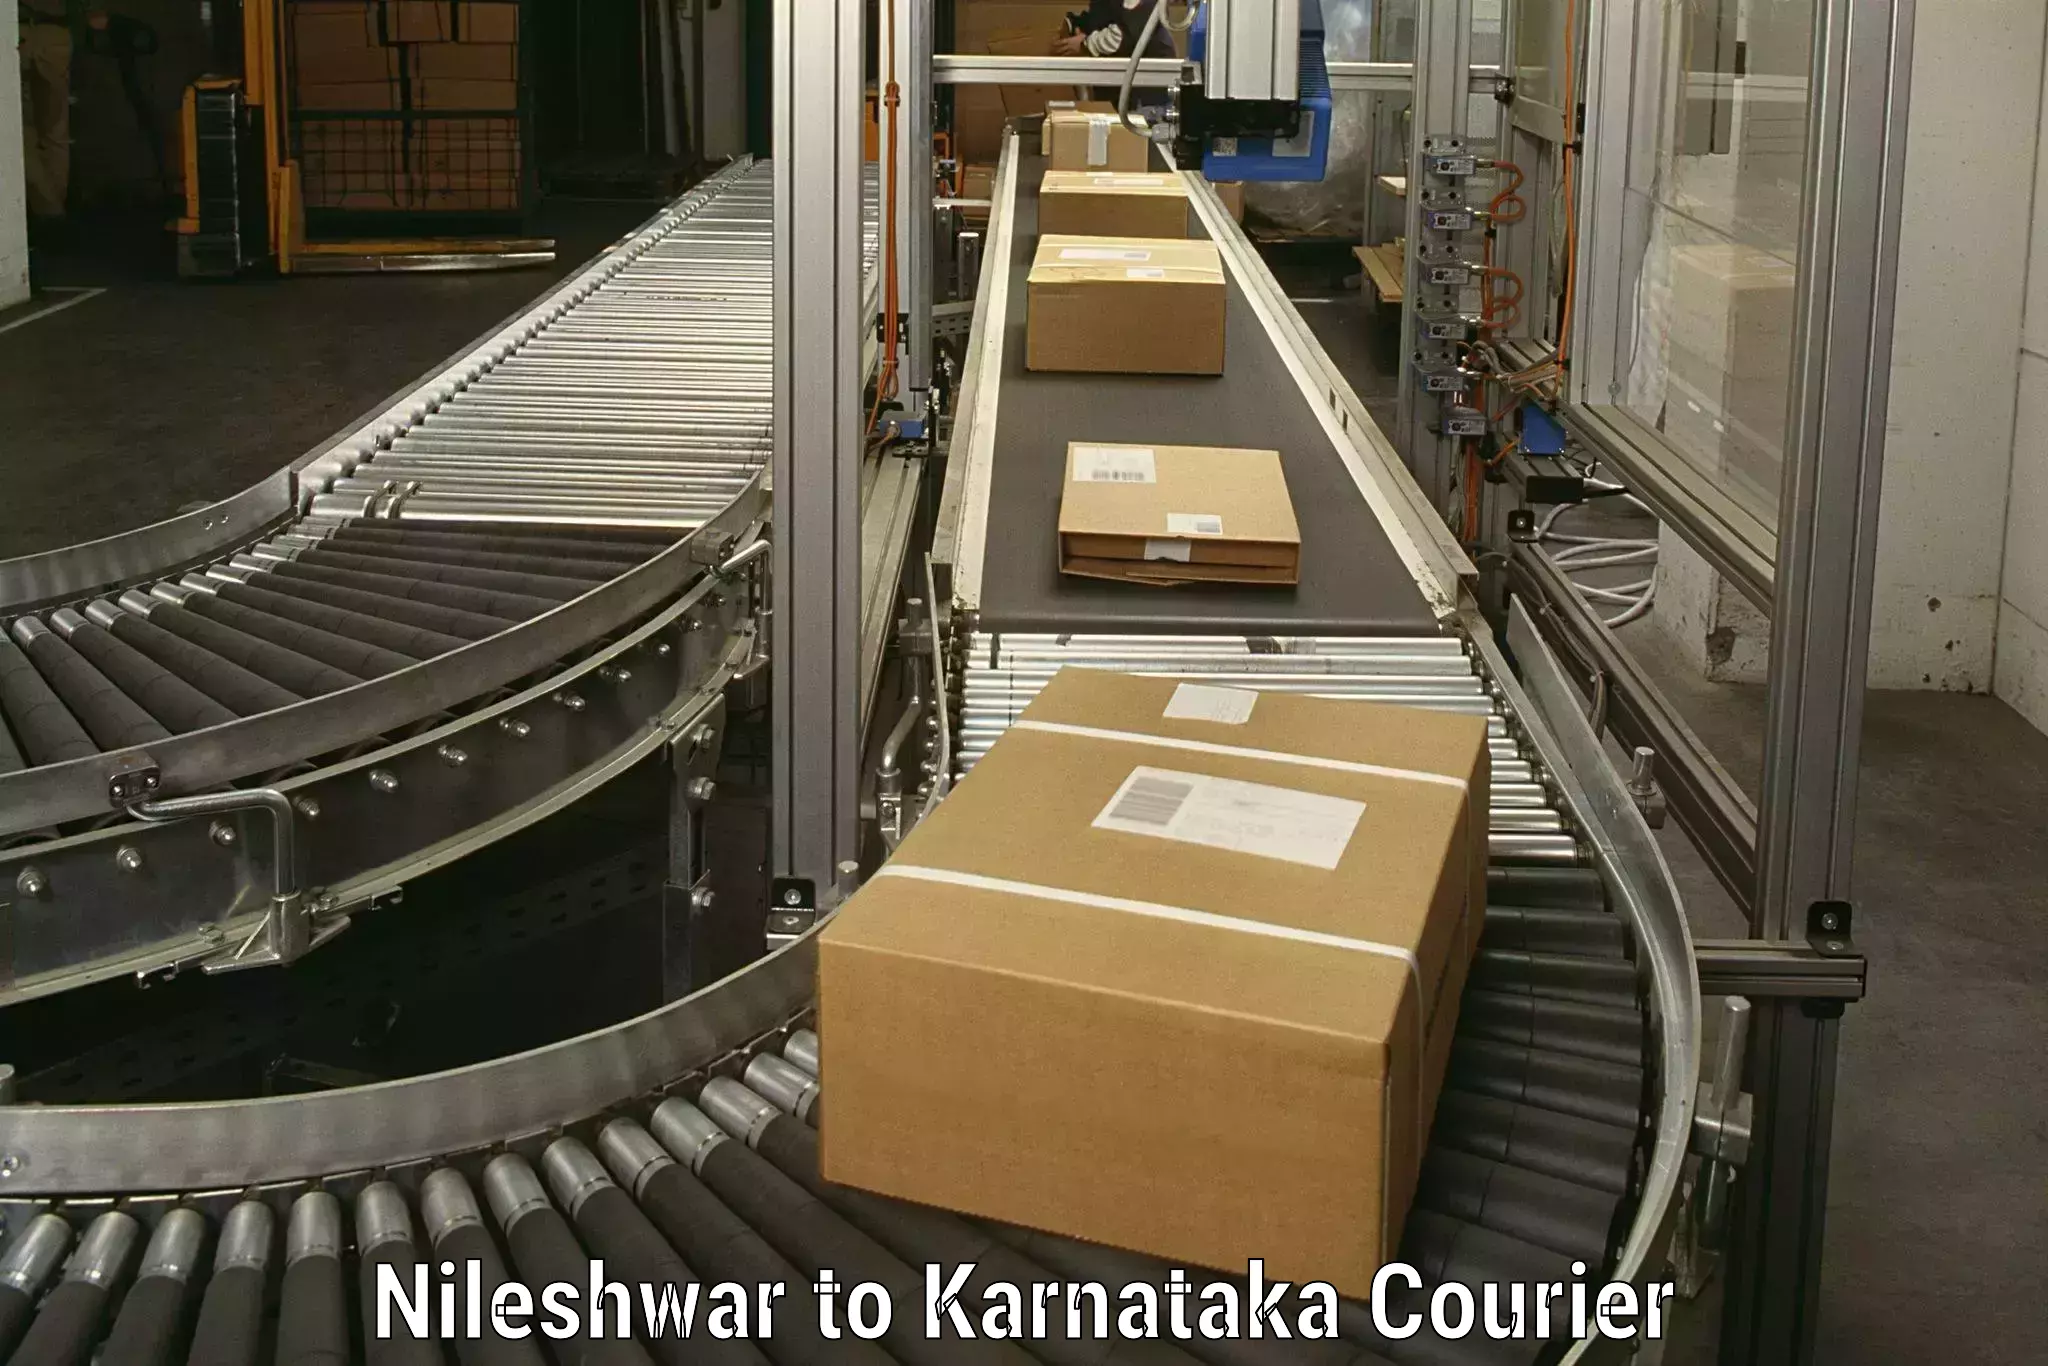 Furniture moving service in Nileshwar to Karnataka